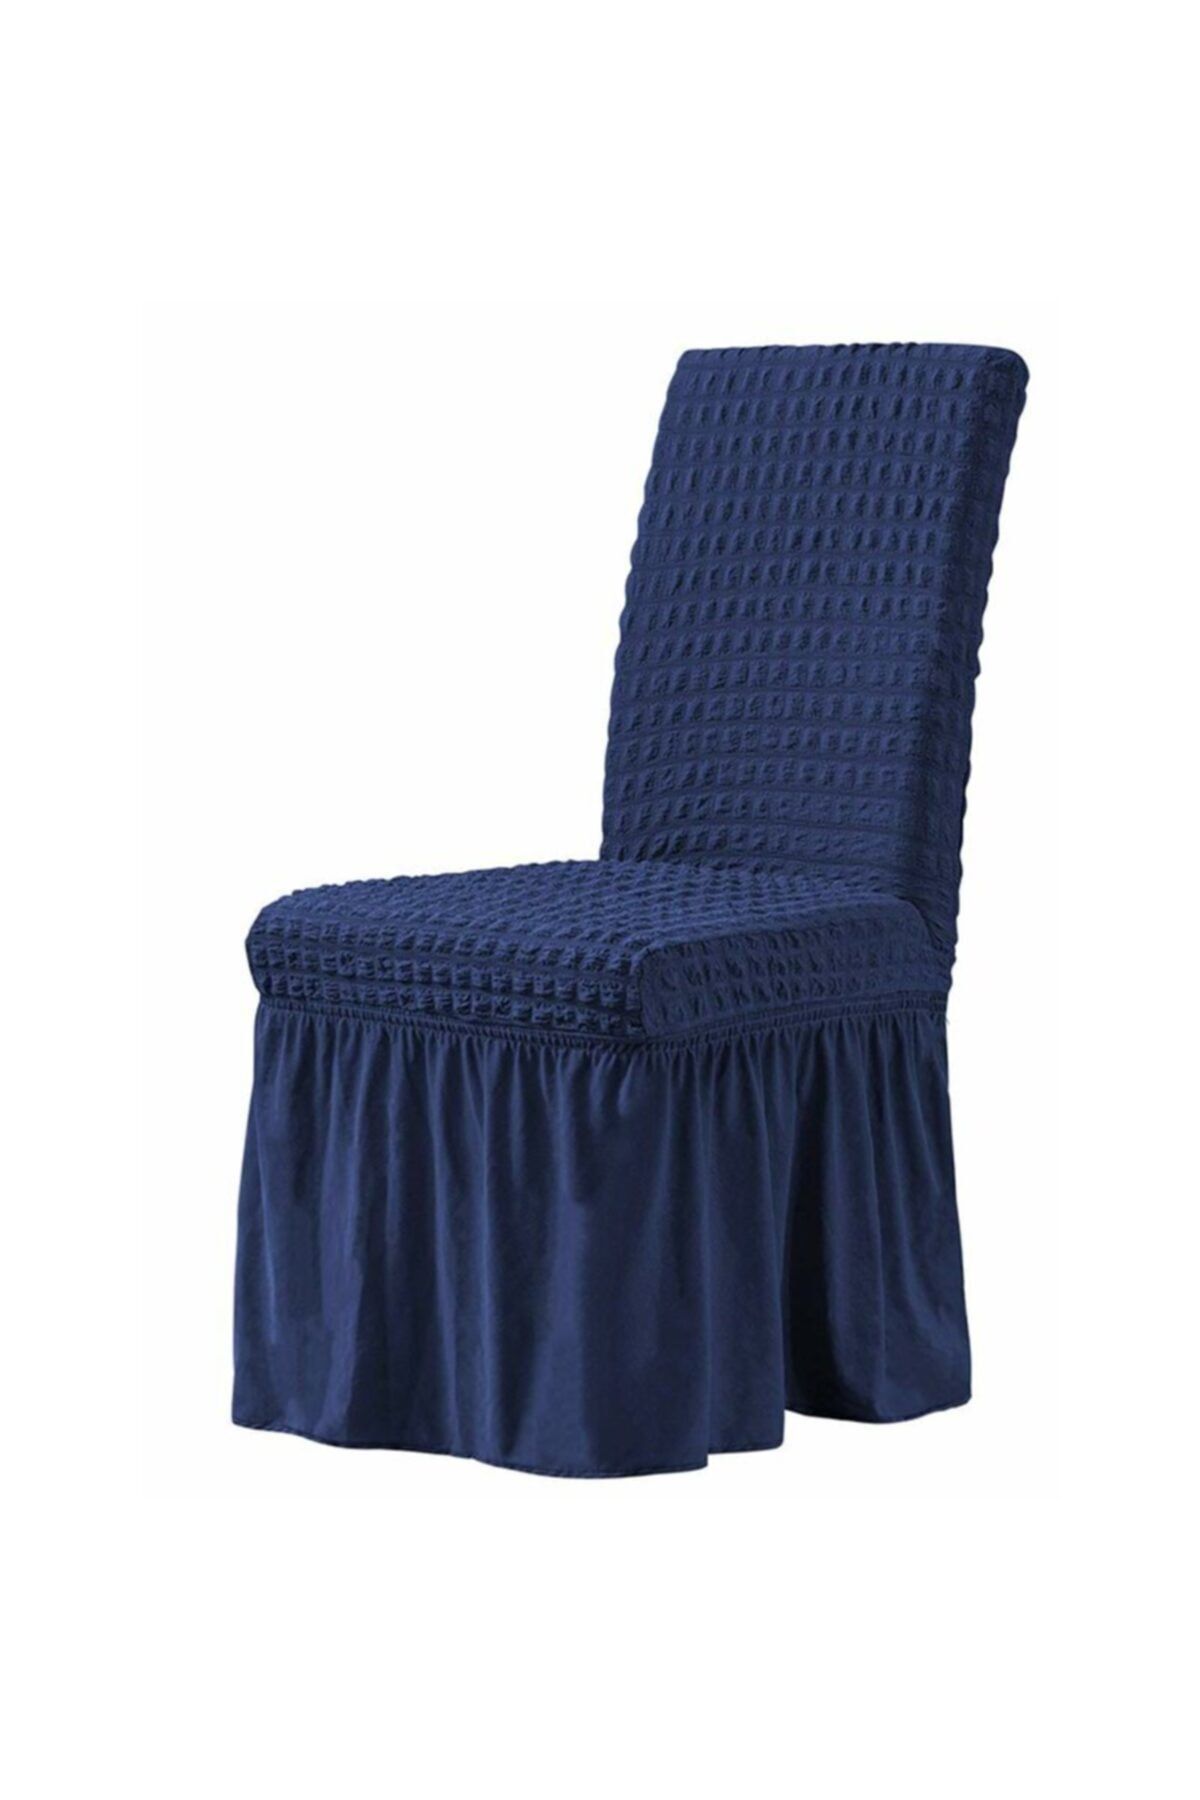 elgeyar Bürümcük Sandalye Örtüsü , Sandalye Kılıfı Etekli Mavi 1 Adet